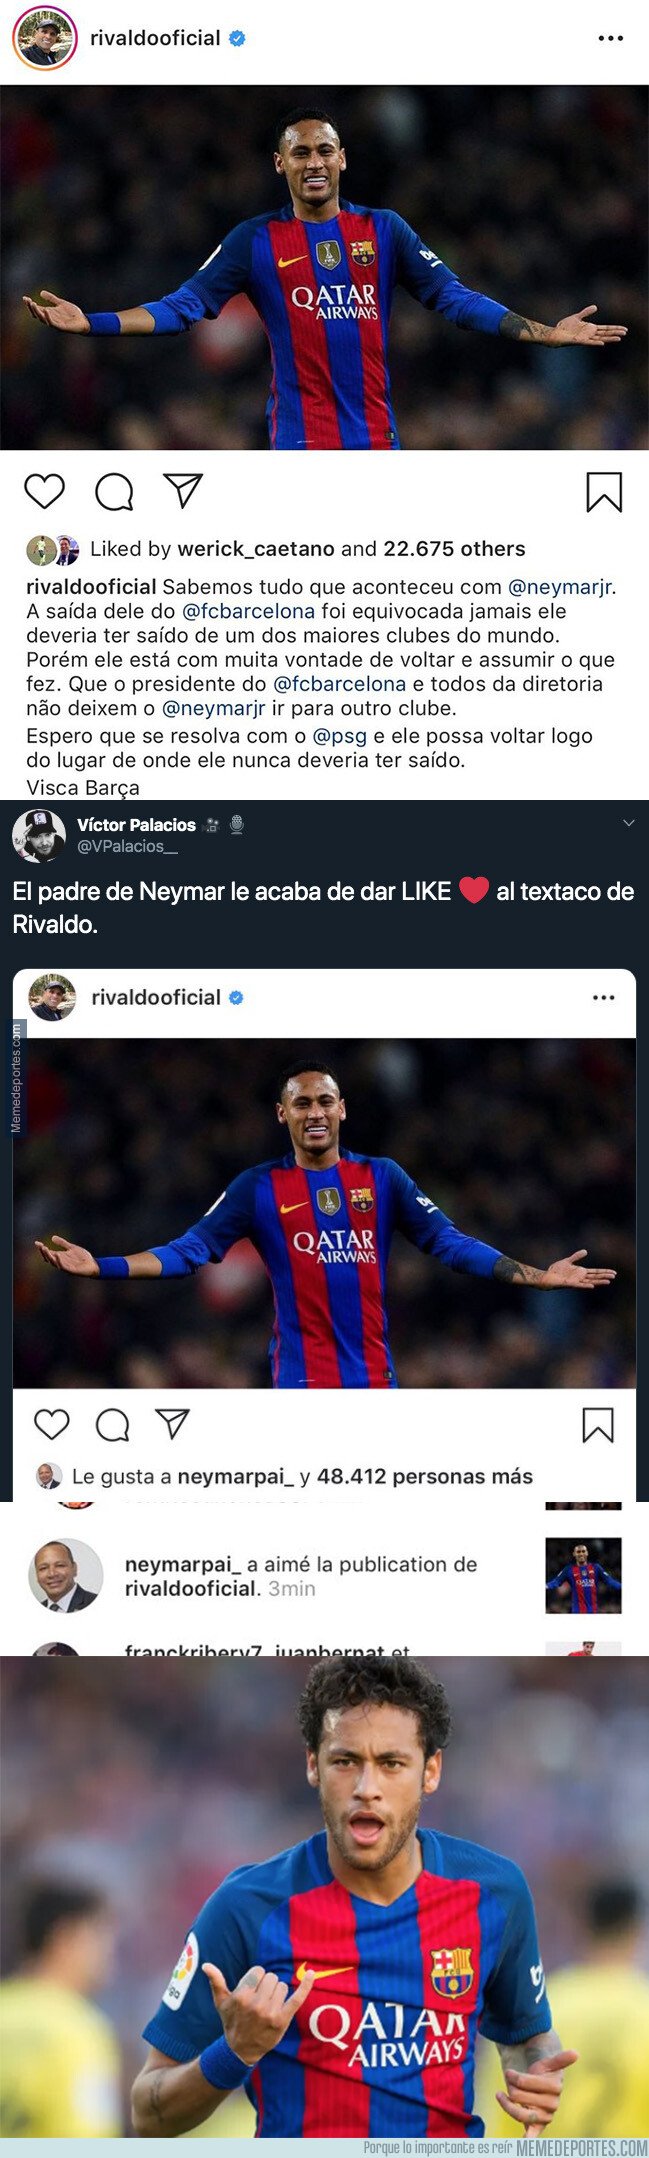 1084338 - El padre de Neymar acaba de darle 'me gusta' a esta publicación de Instagram y acaba de revolucionar todo internet